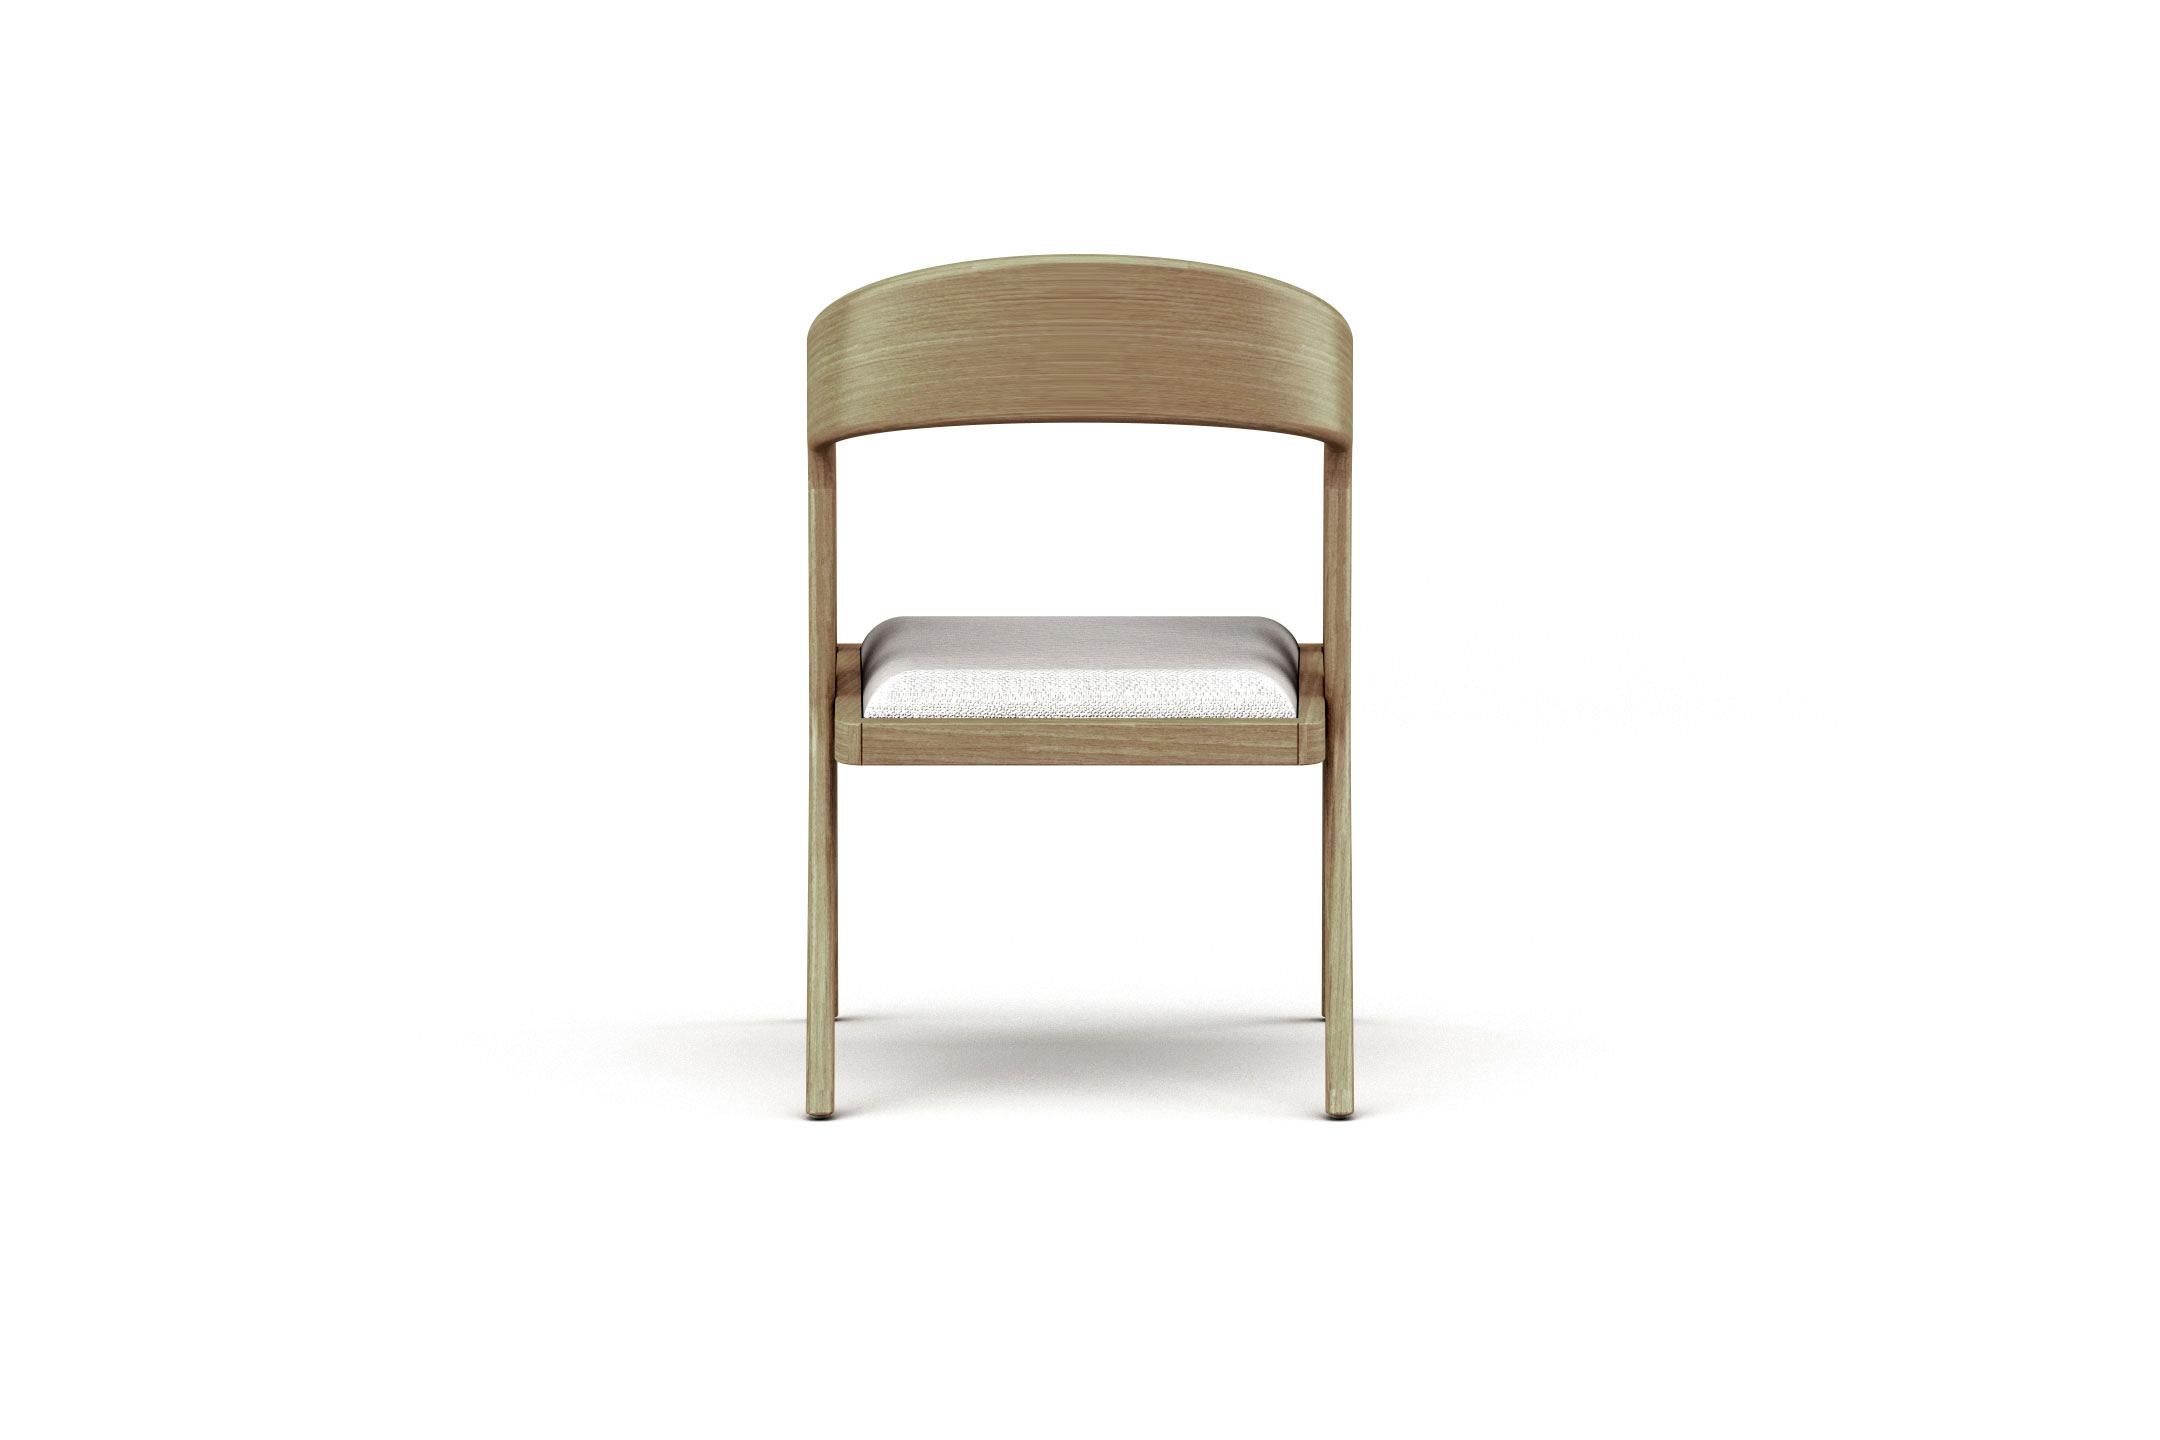 Européen Fauteuil Branch, fauteuil moderne et minimaliste en chêne avec assise rembourrée en vente